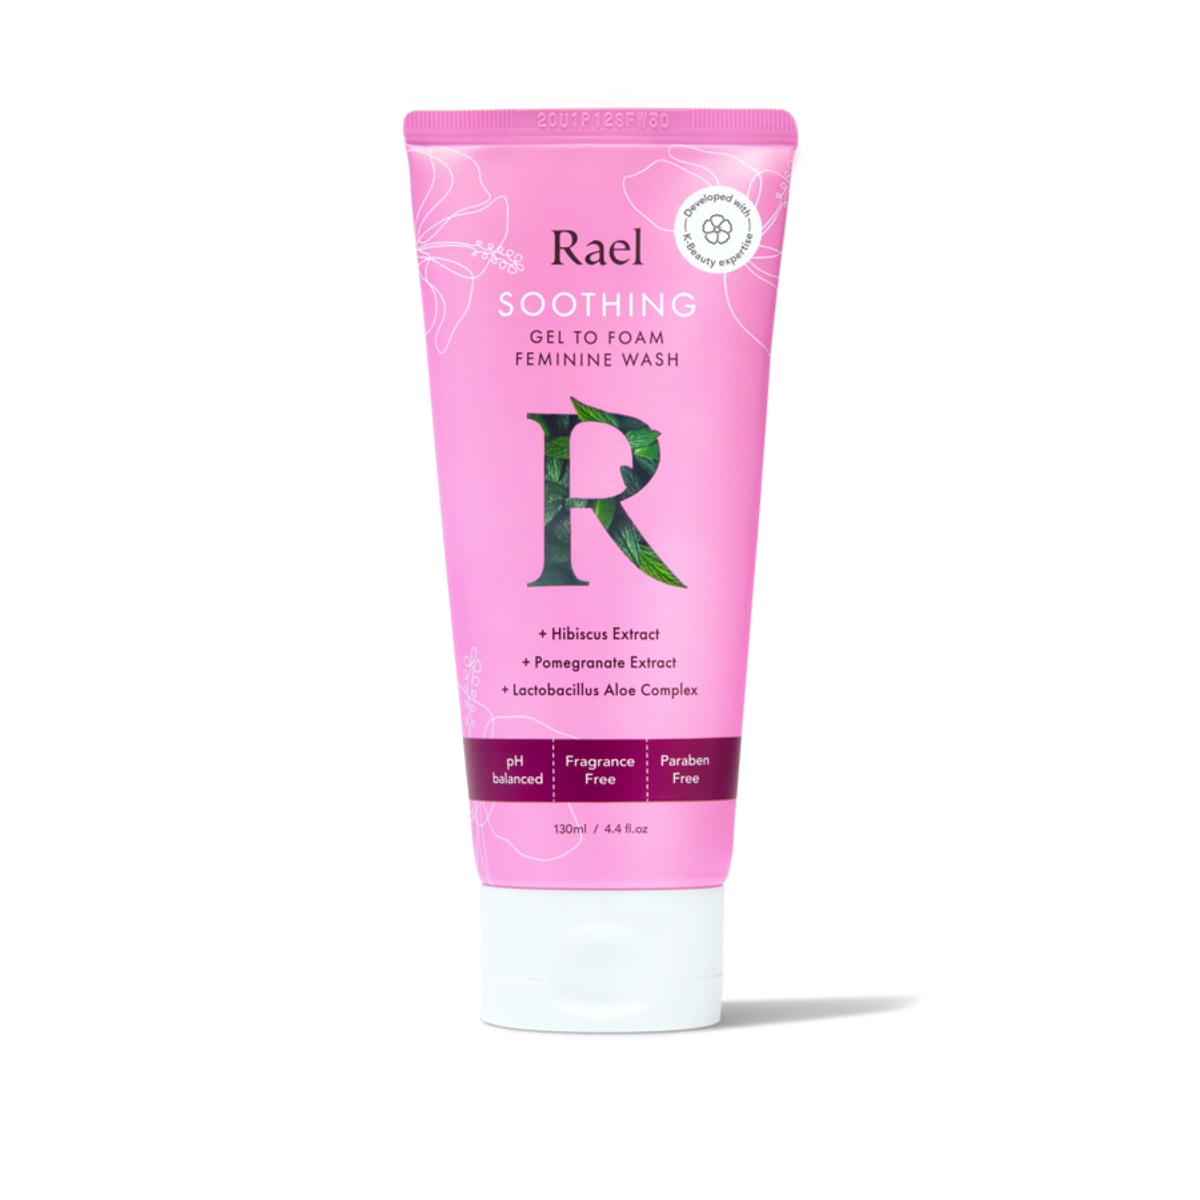 rael soothing gel to foam feminine wash